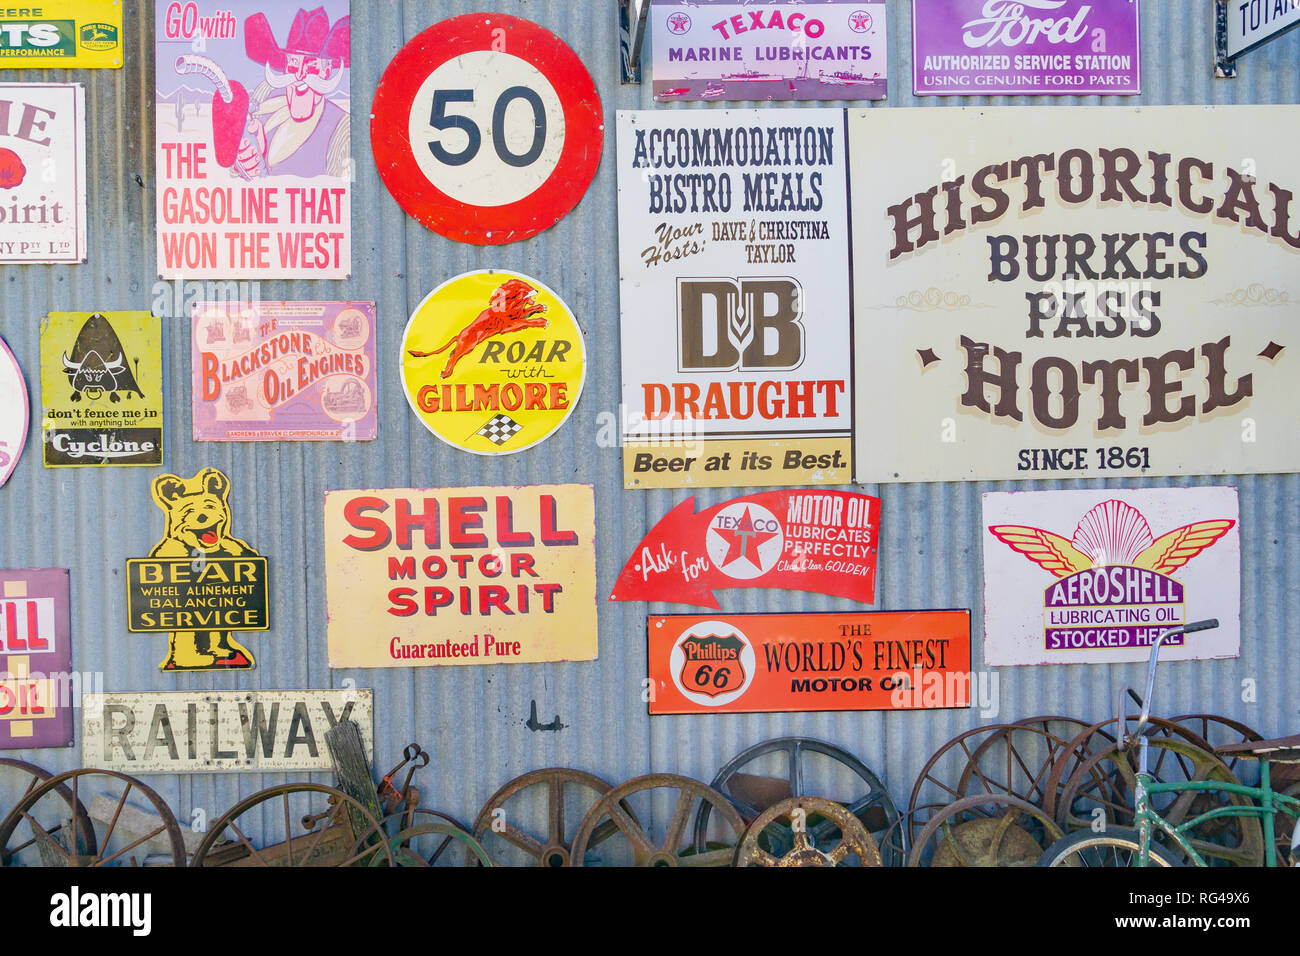 BURKES PASS, NEUSEELAND - 14. Oktober 2018; Sammlung von Erbe Zeichen und Gebäude zusammen als touristische Stop-off Punkt von Interesse. Stockfoto